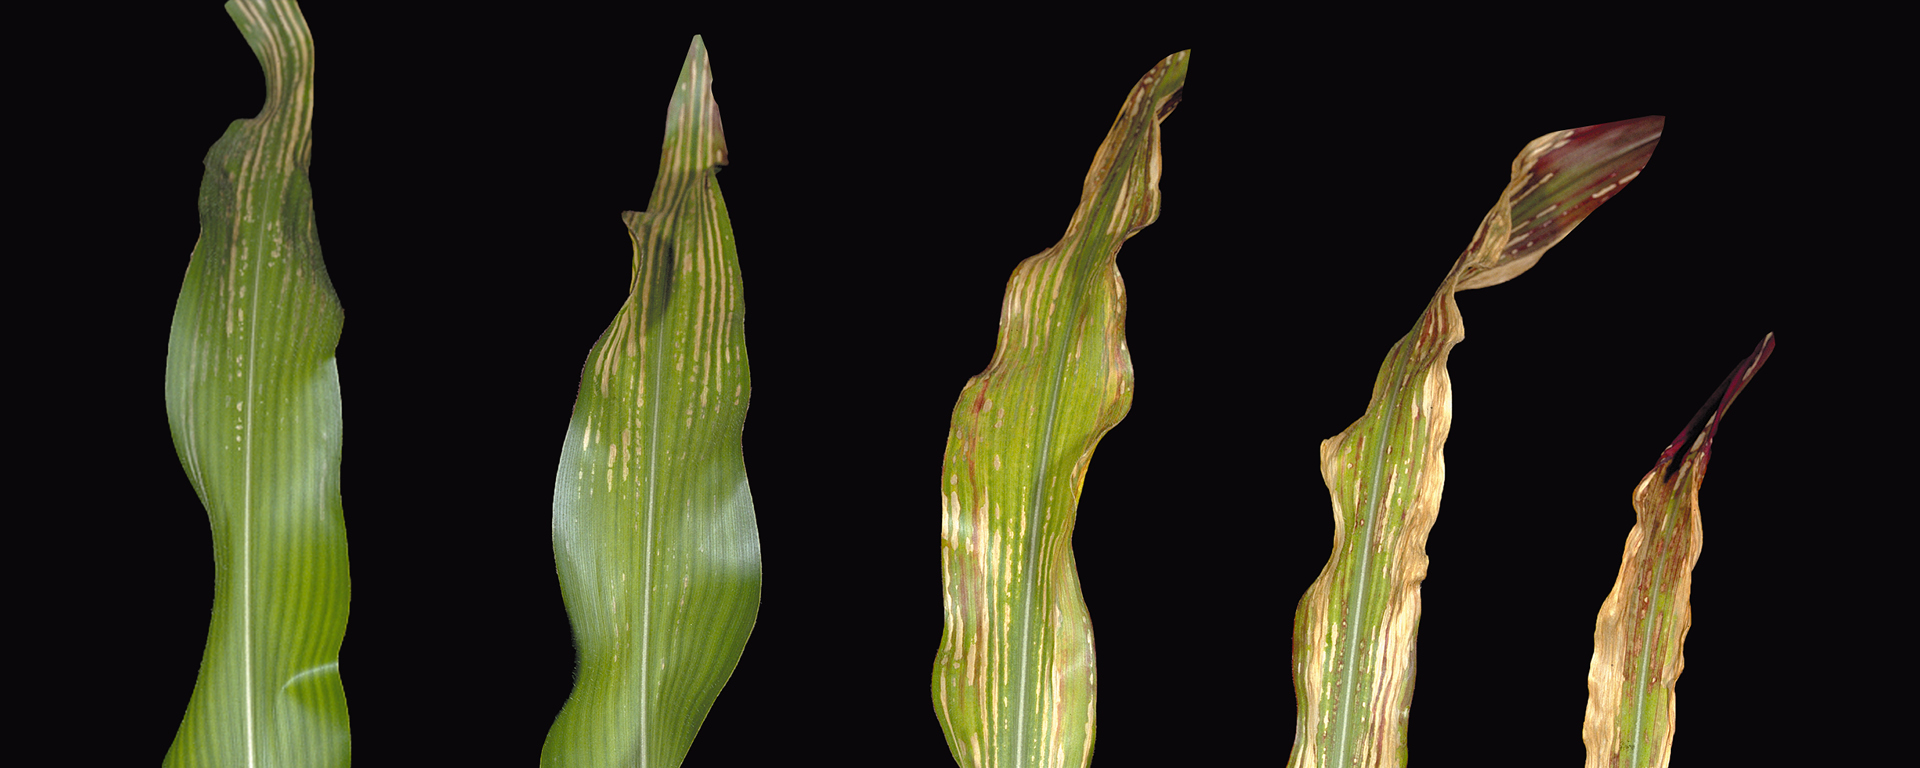 Magnesiummangel bei Mais (von links nach rechts: leichter bis schwerer Mangel)